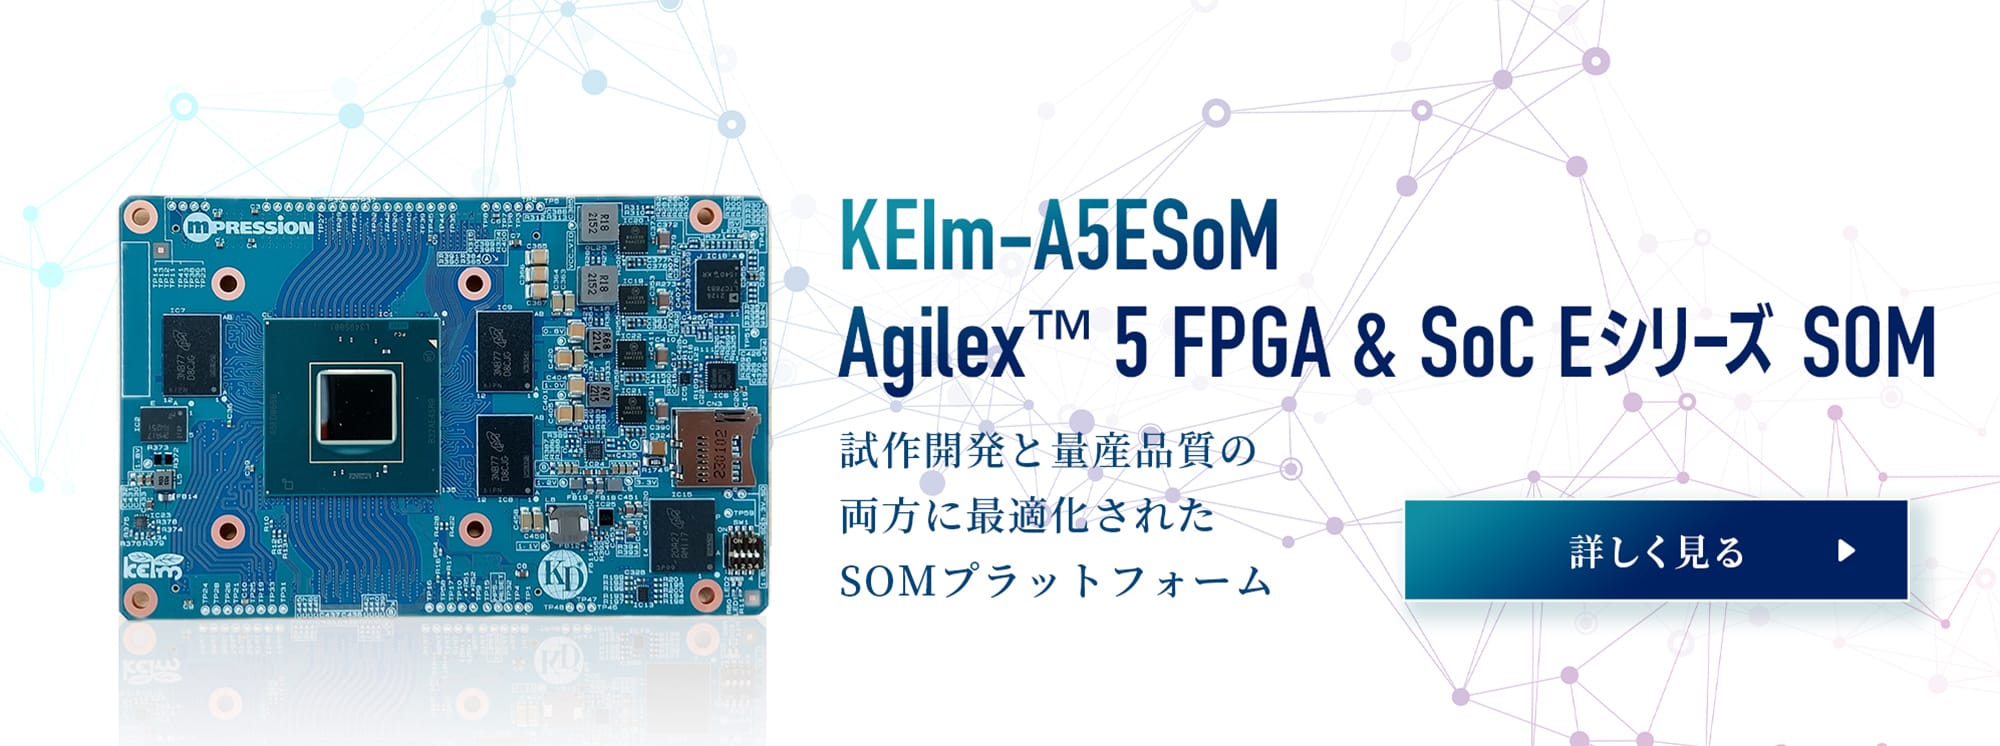 KEIm-A5ESoM Agilex™ 5 FPGA & SoC E-Series SOM